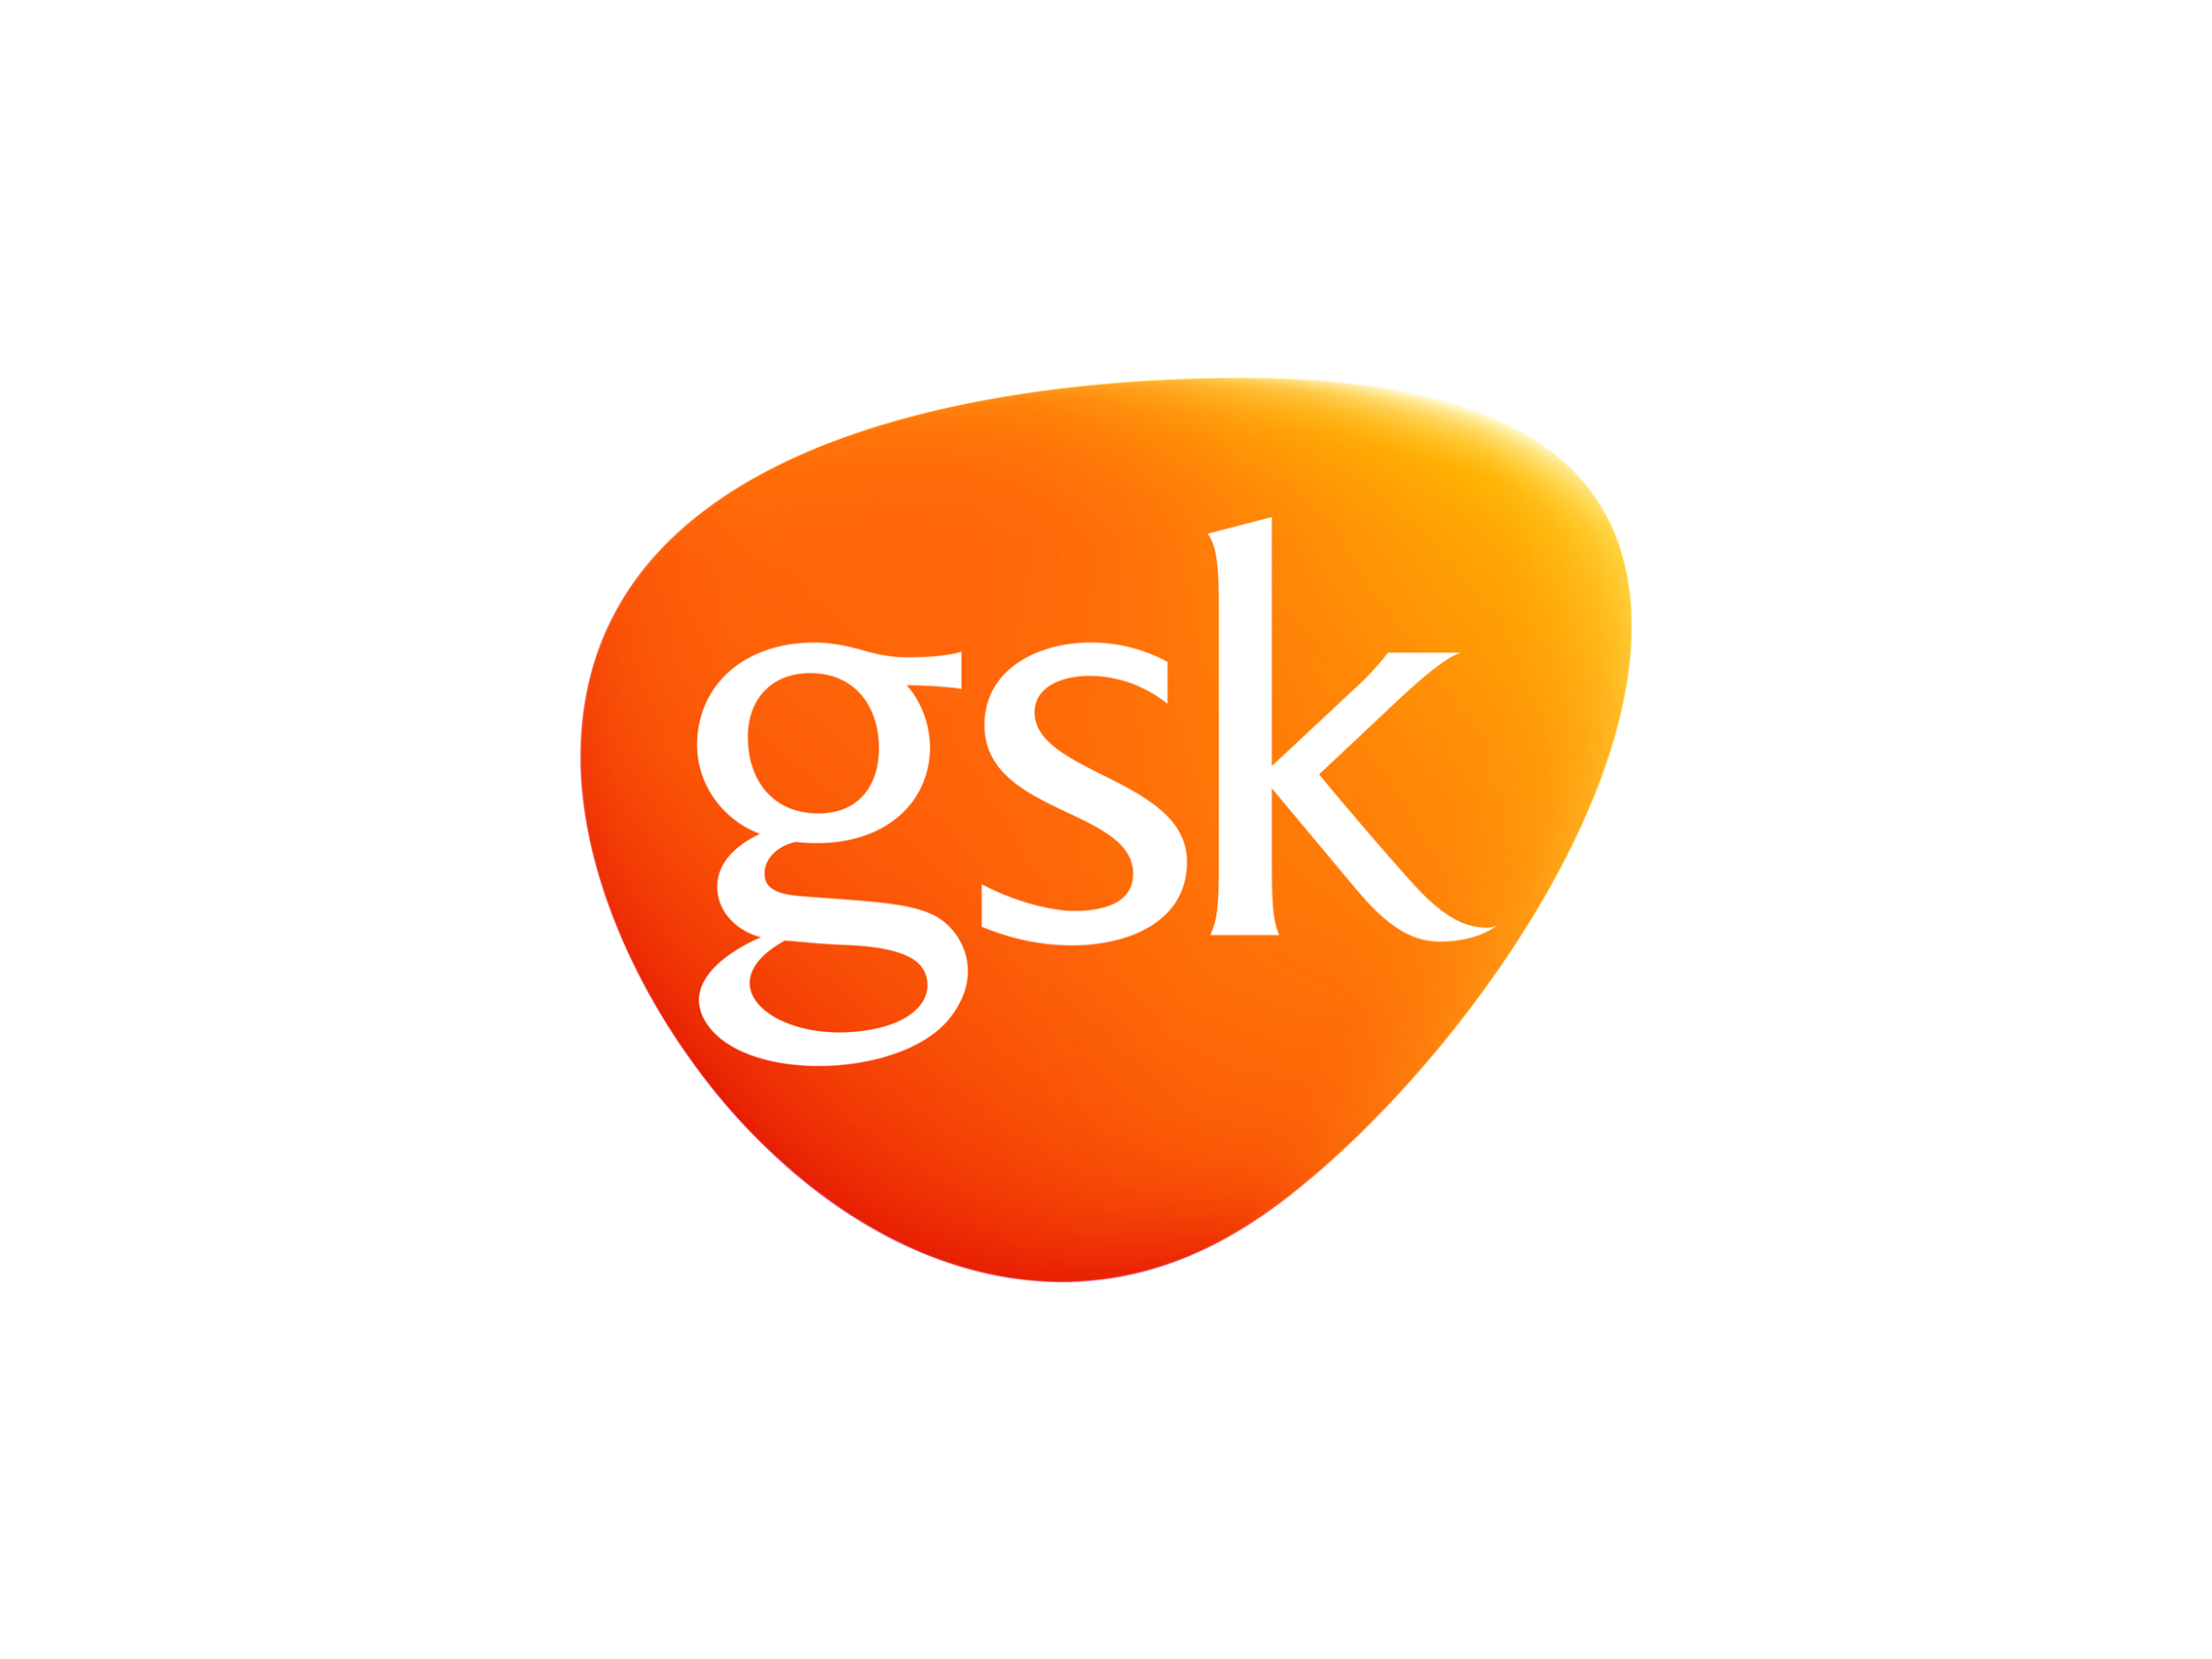 GlaxoSmithKline-logo.png